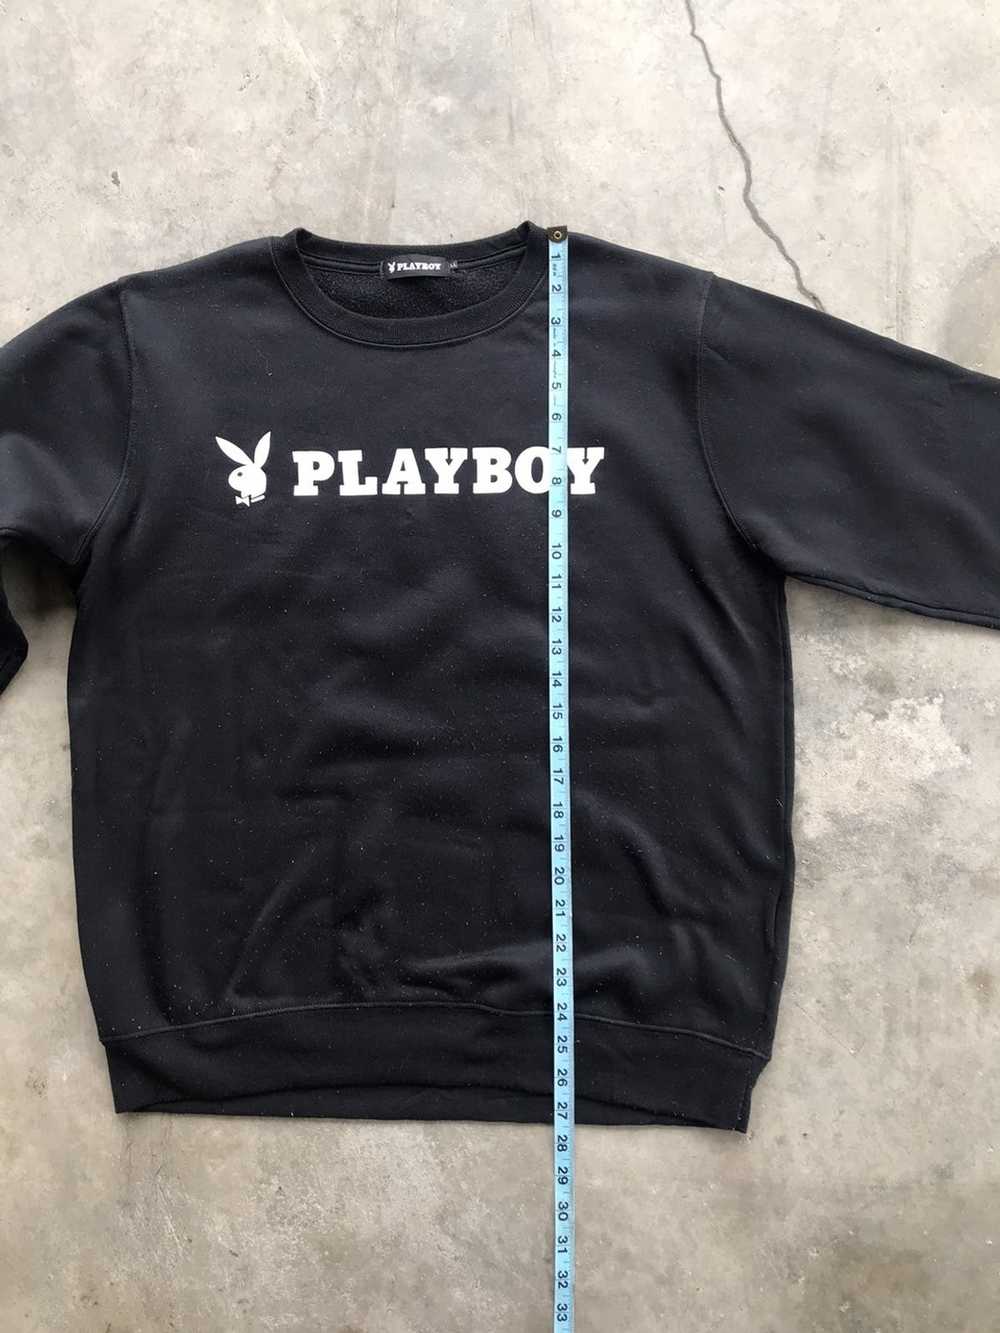 Playboy Playboy sweatshirts logo - image 8